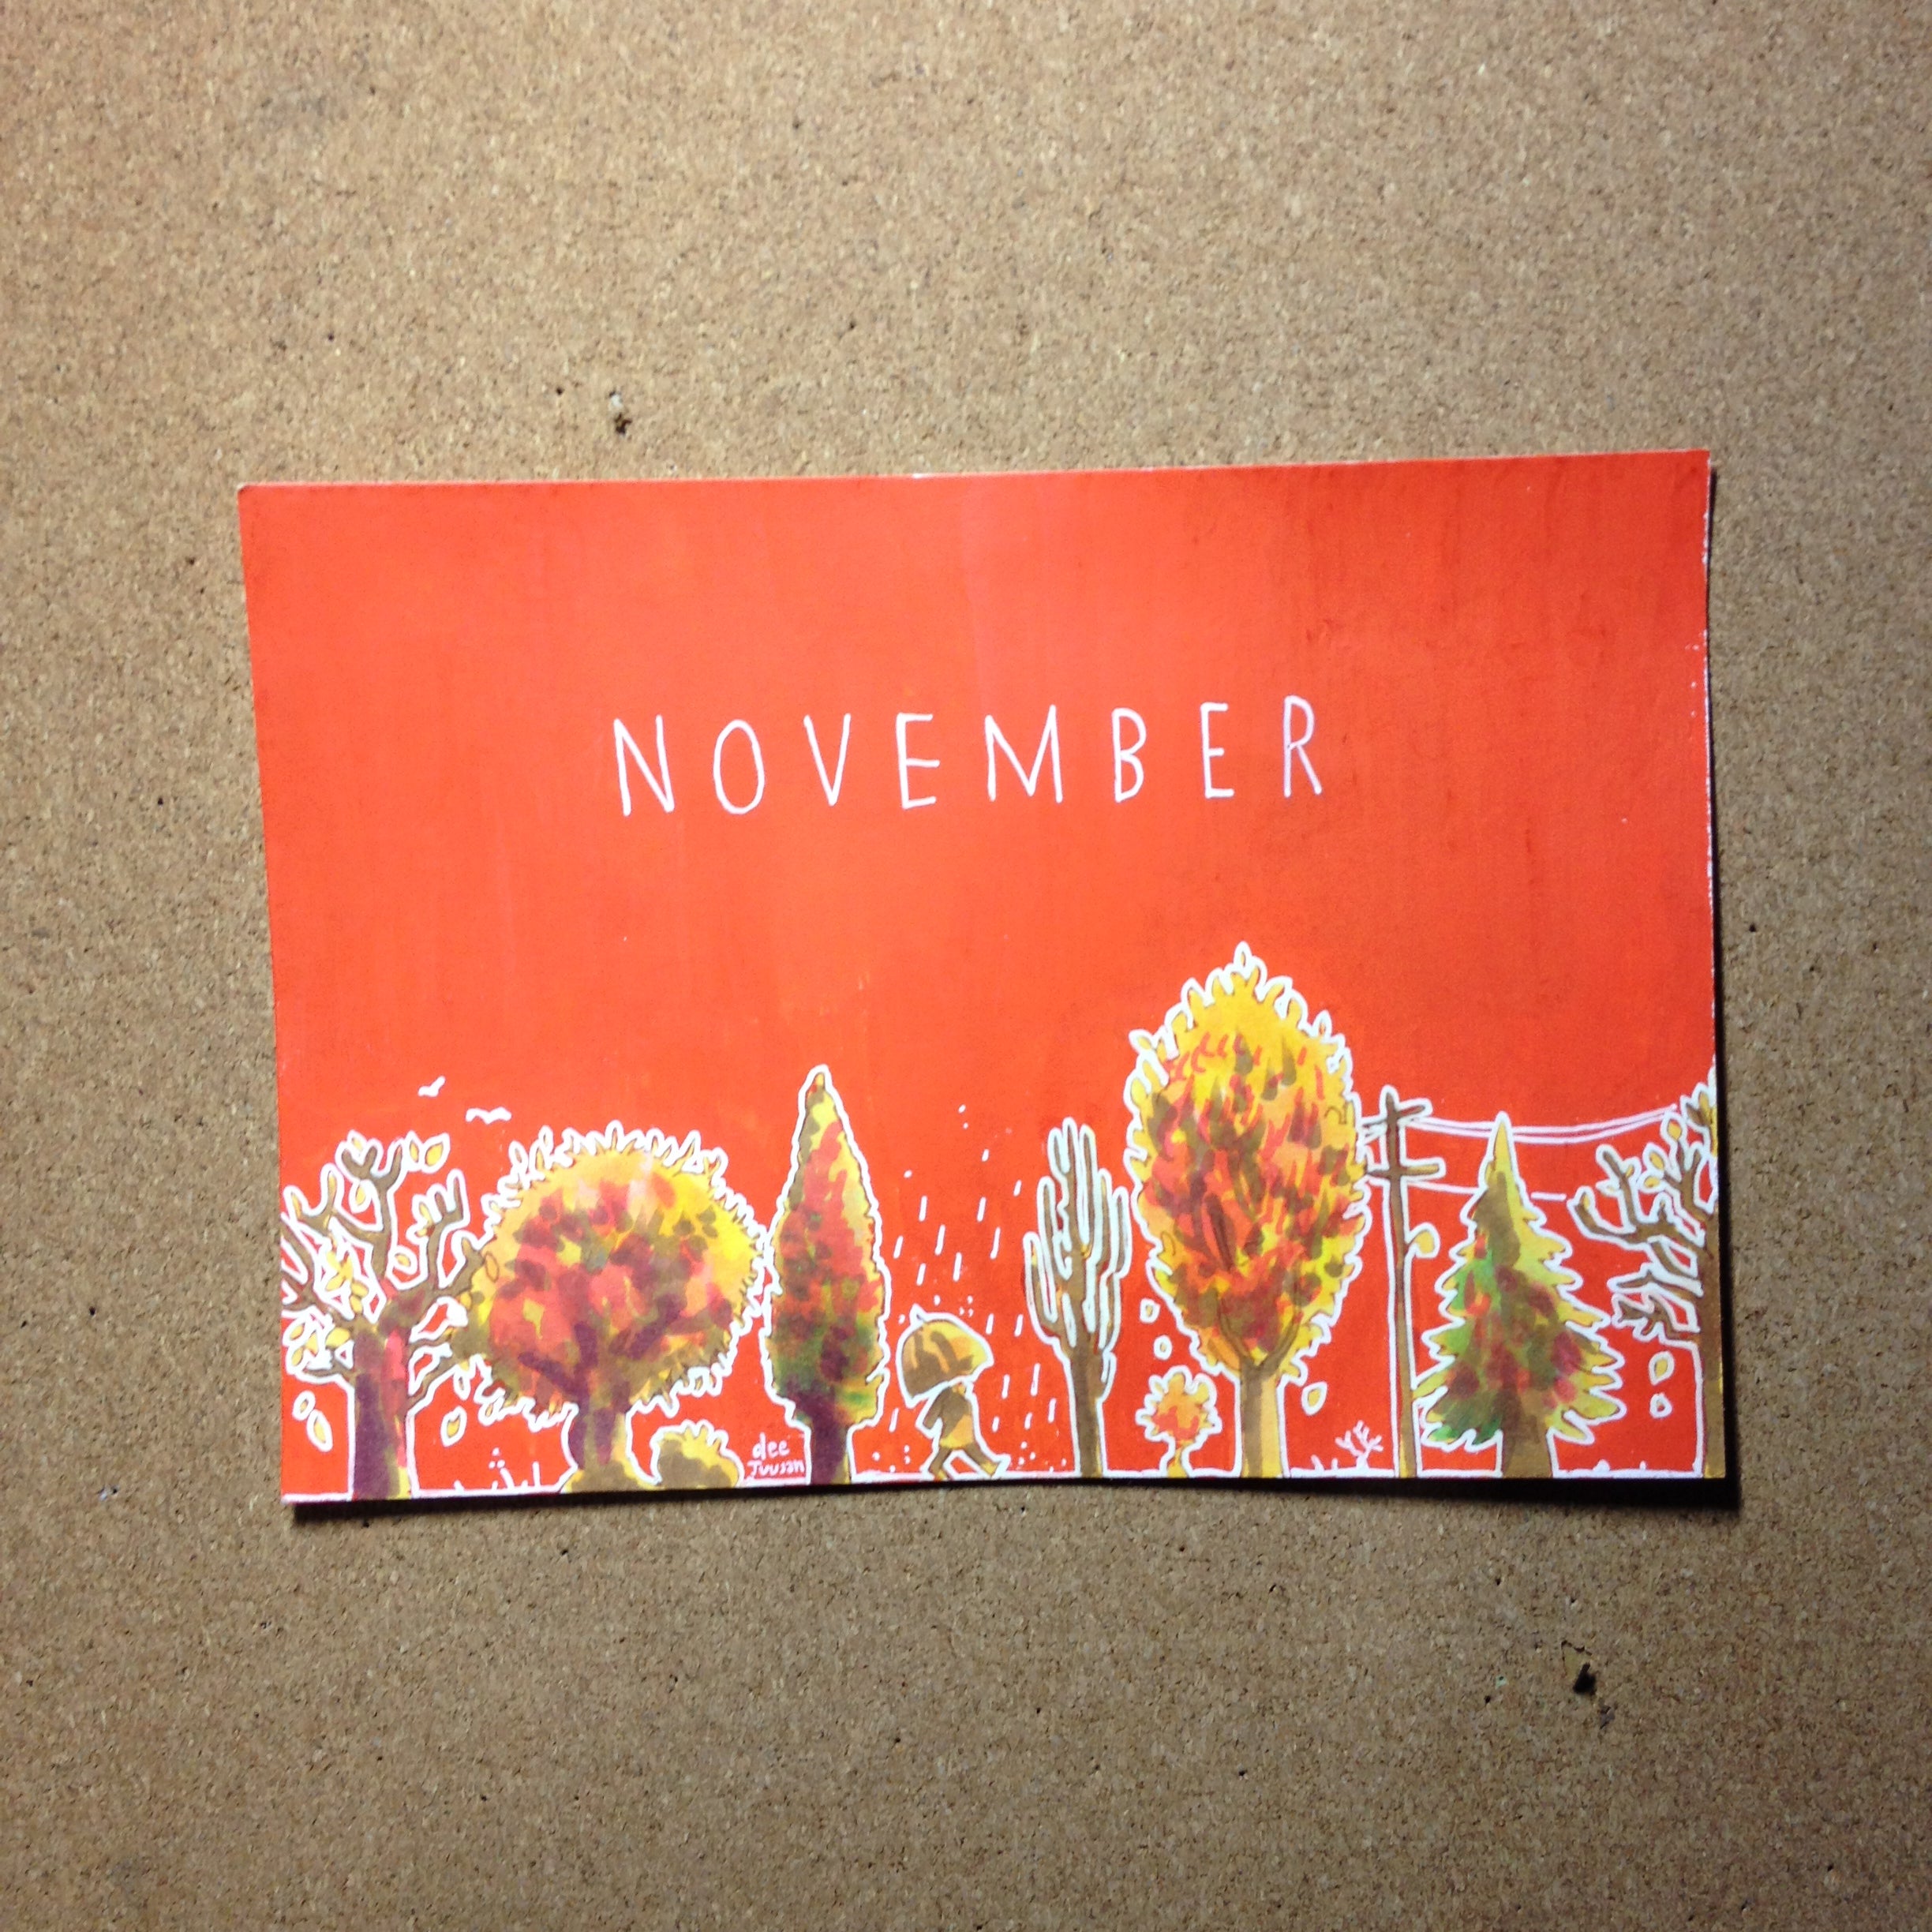 Original: November